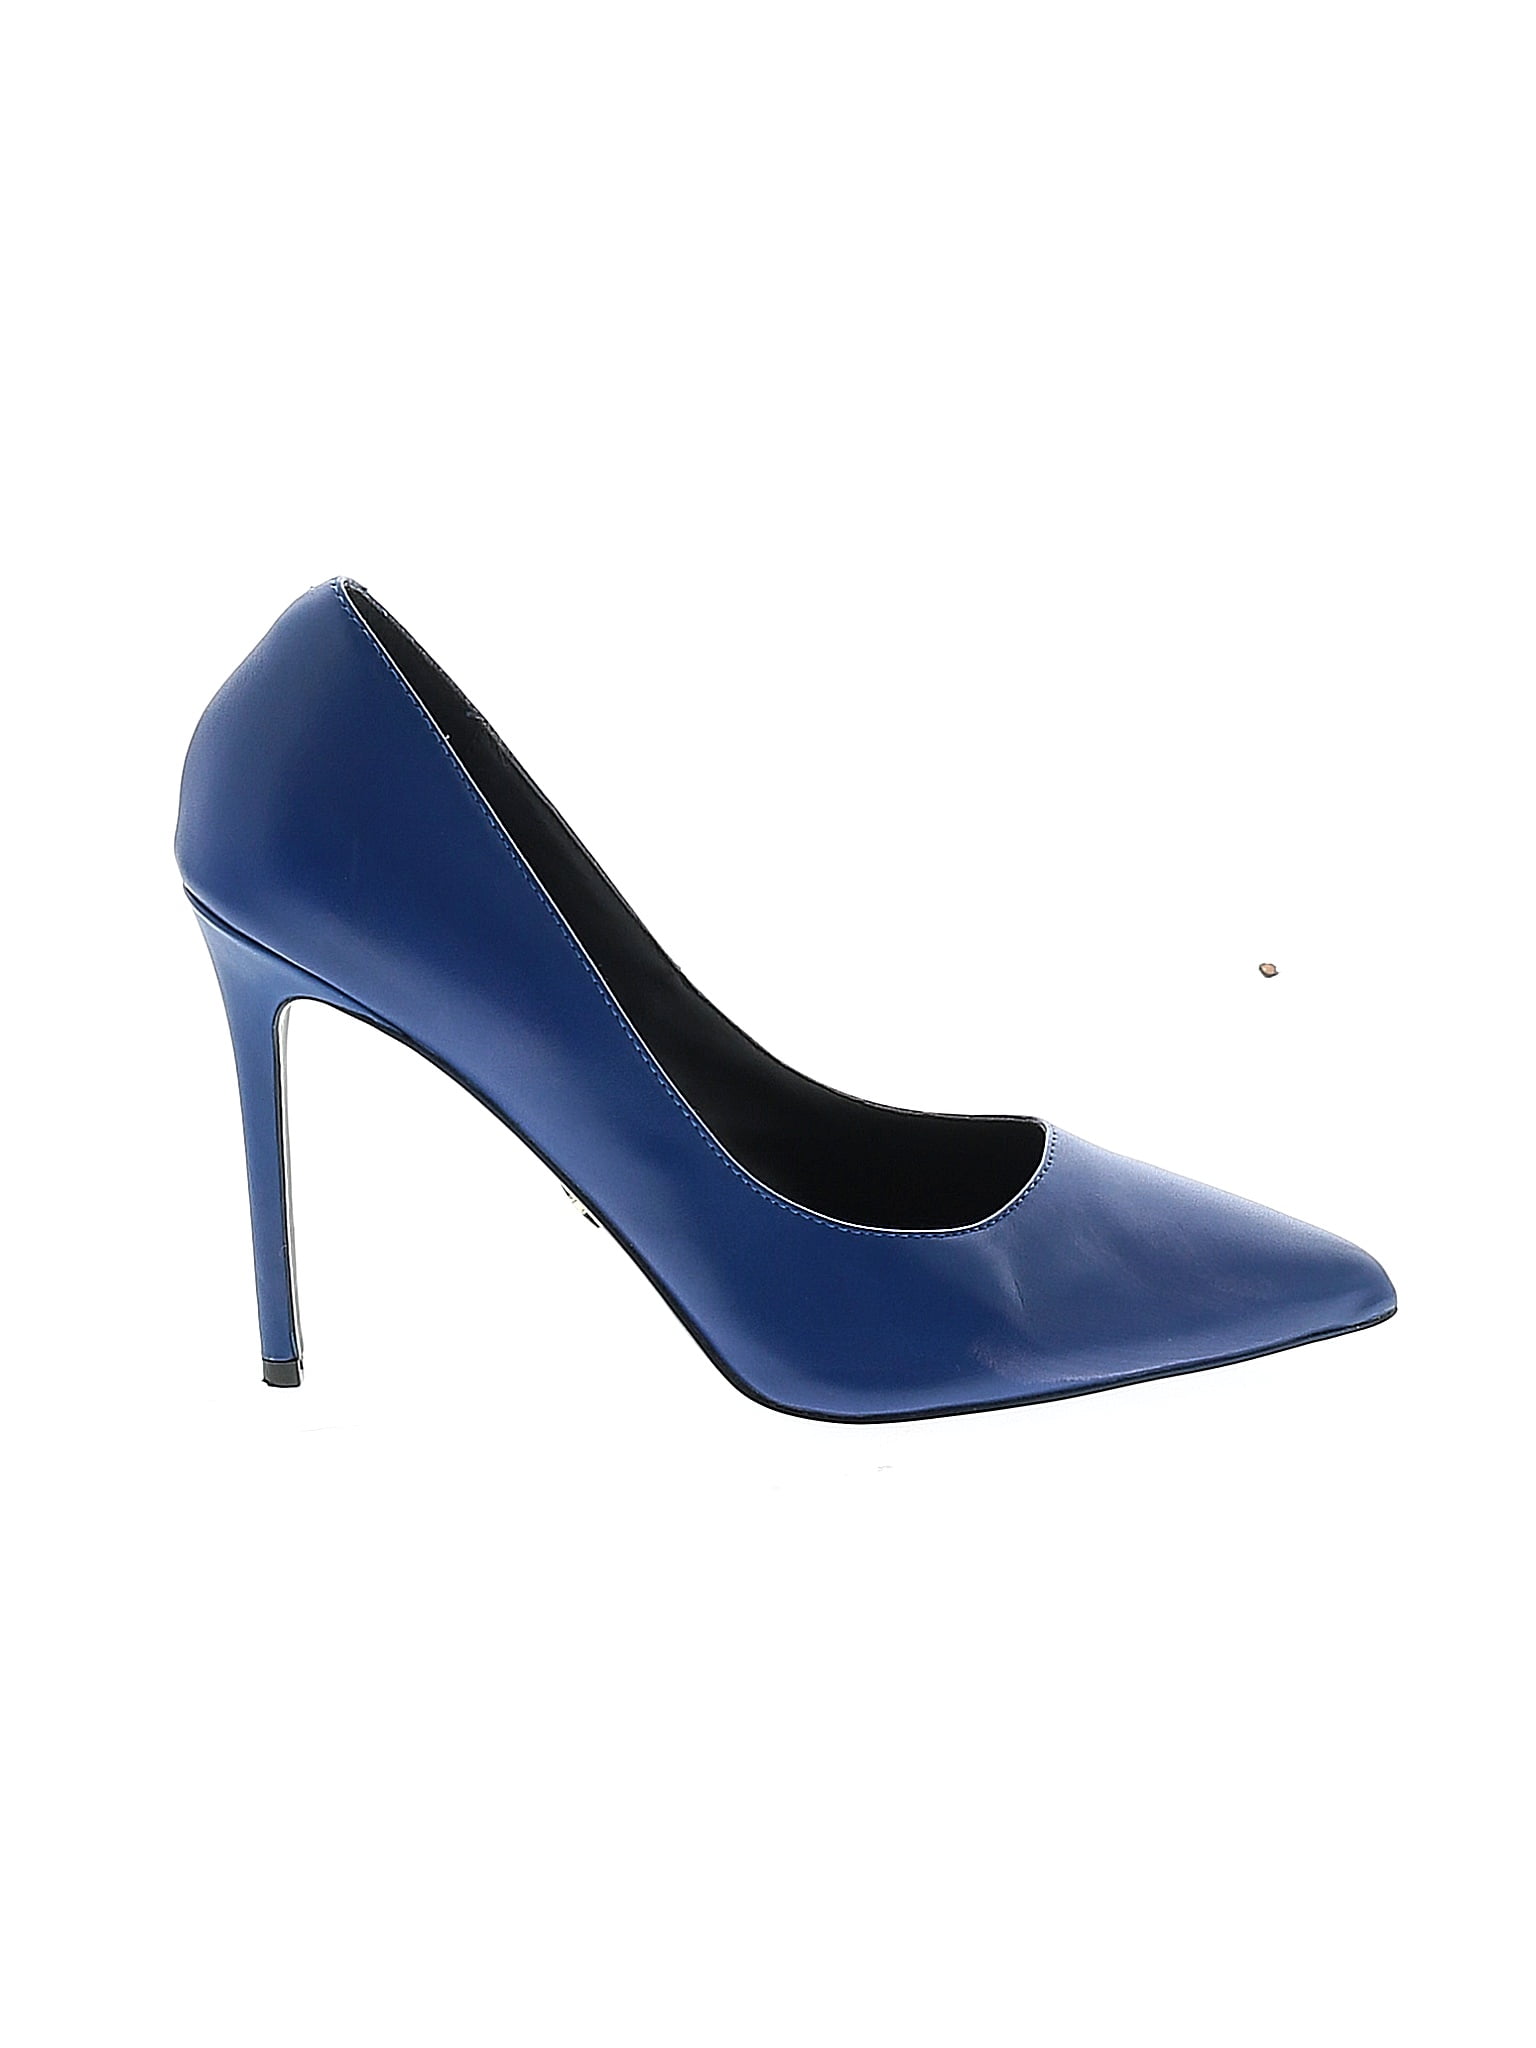 Kurt Geiger London Blue Heels Size 39.5 (EU) - 78% off | ThredUp